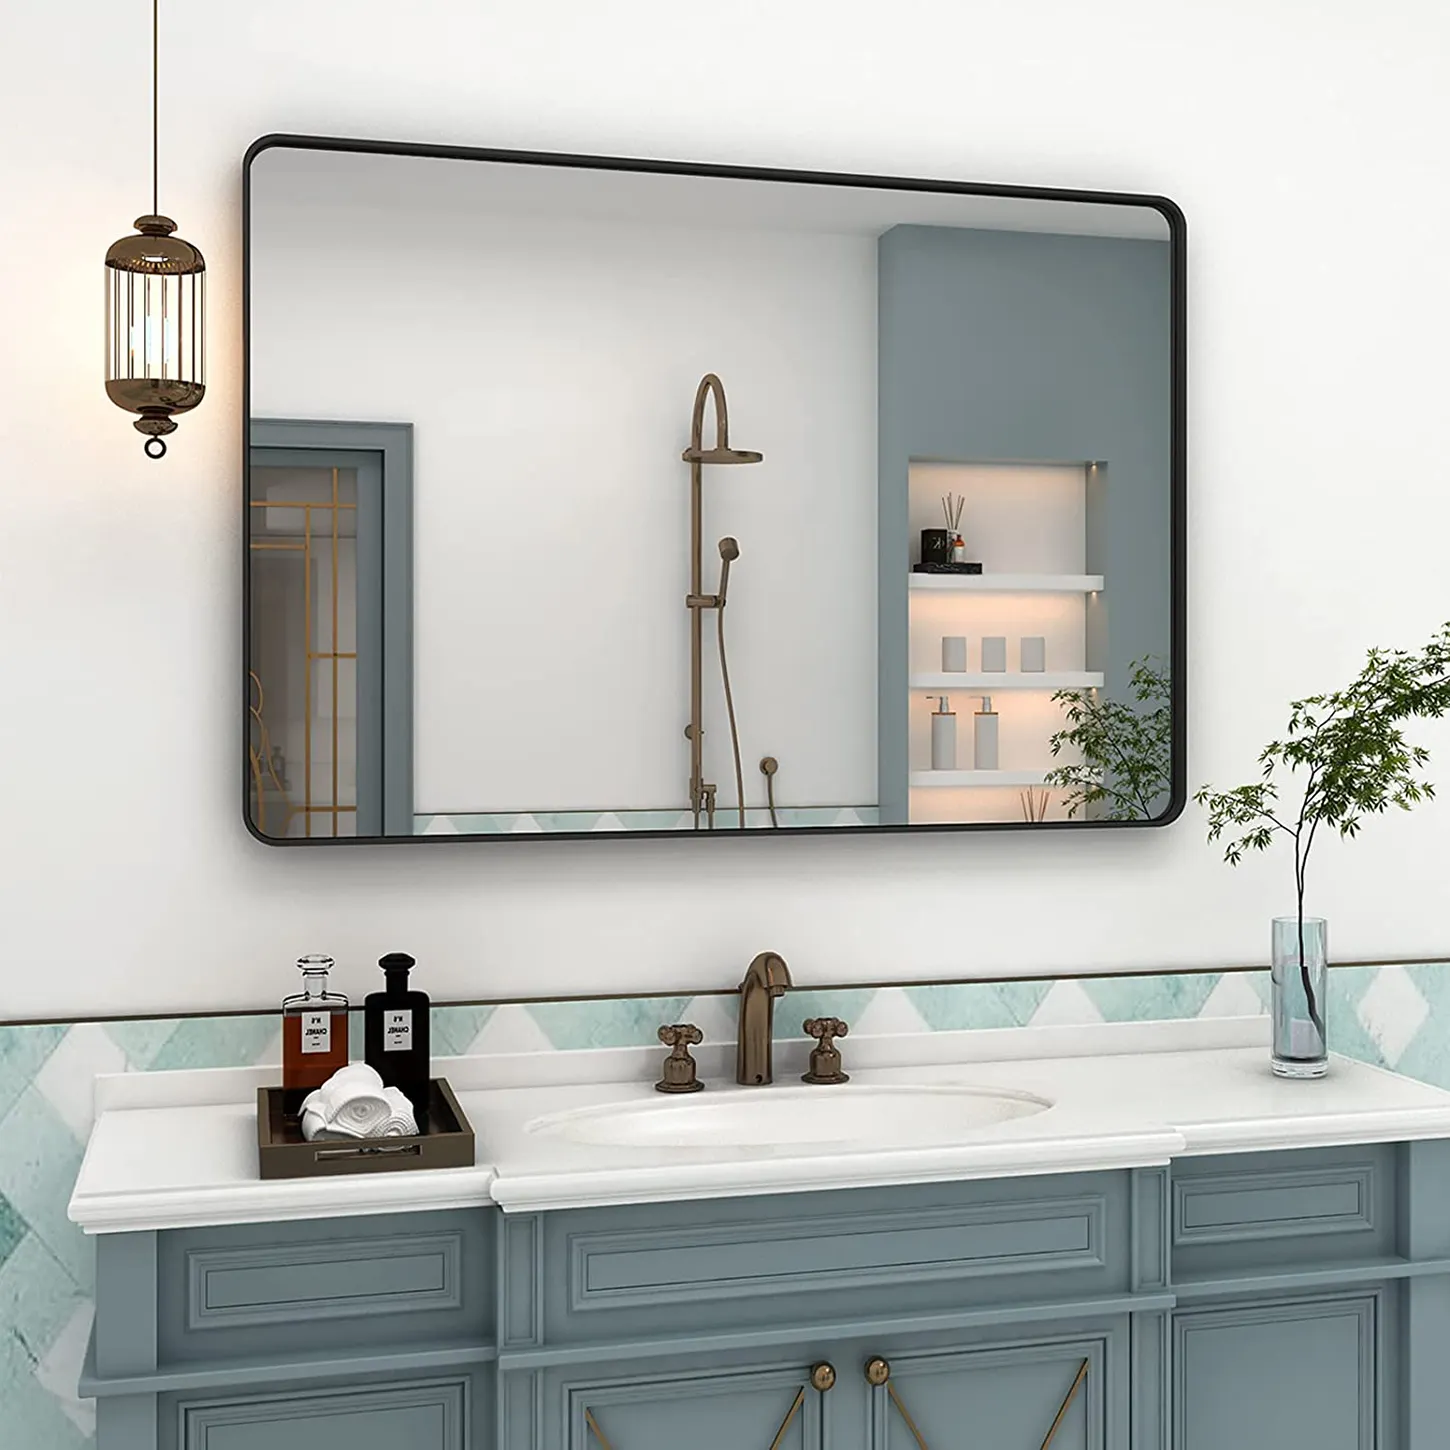 مزرعة المنزل ديكور مرآة حائط للحمام صناعة يدوية مضادة للبخار المقسى نظارات الحمام الإطار المعدني مرآة